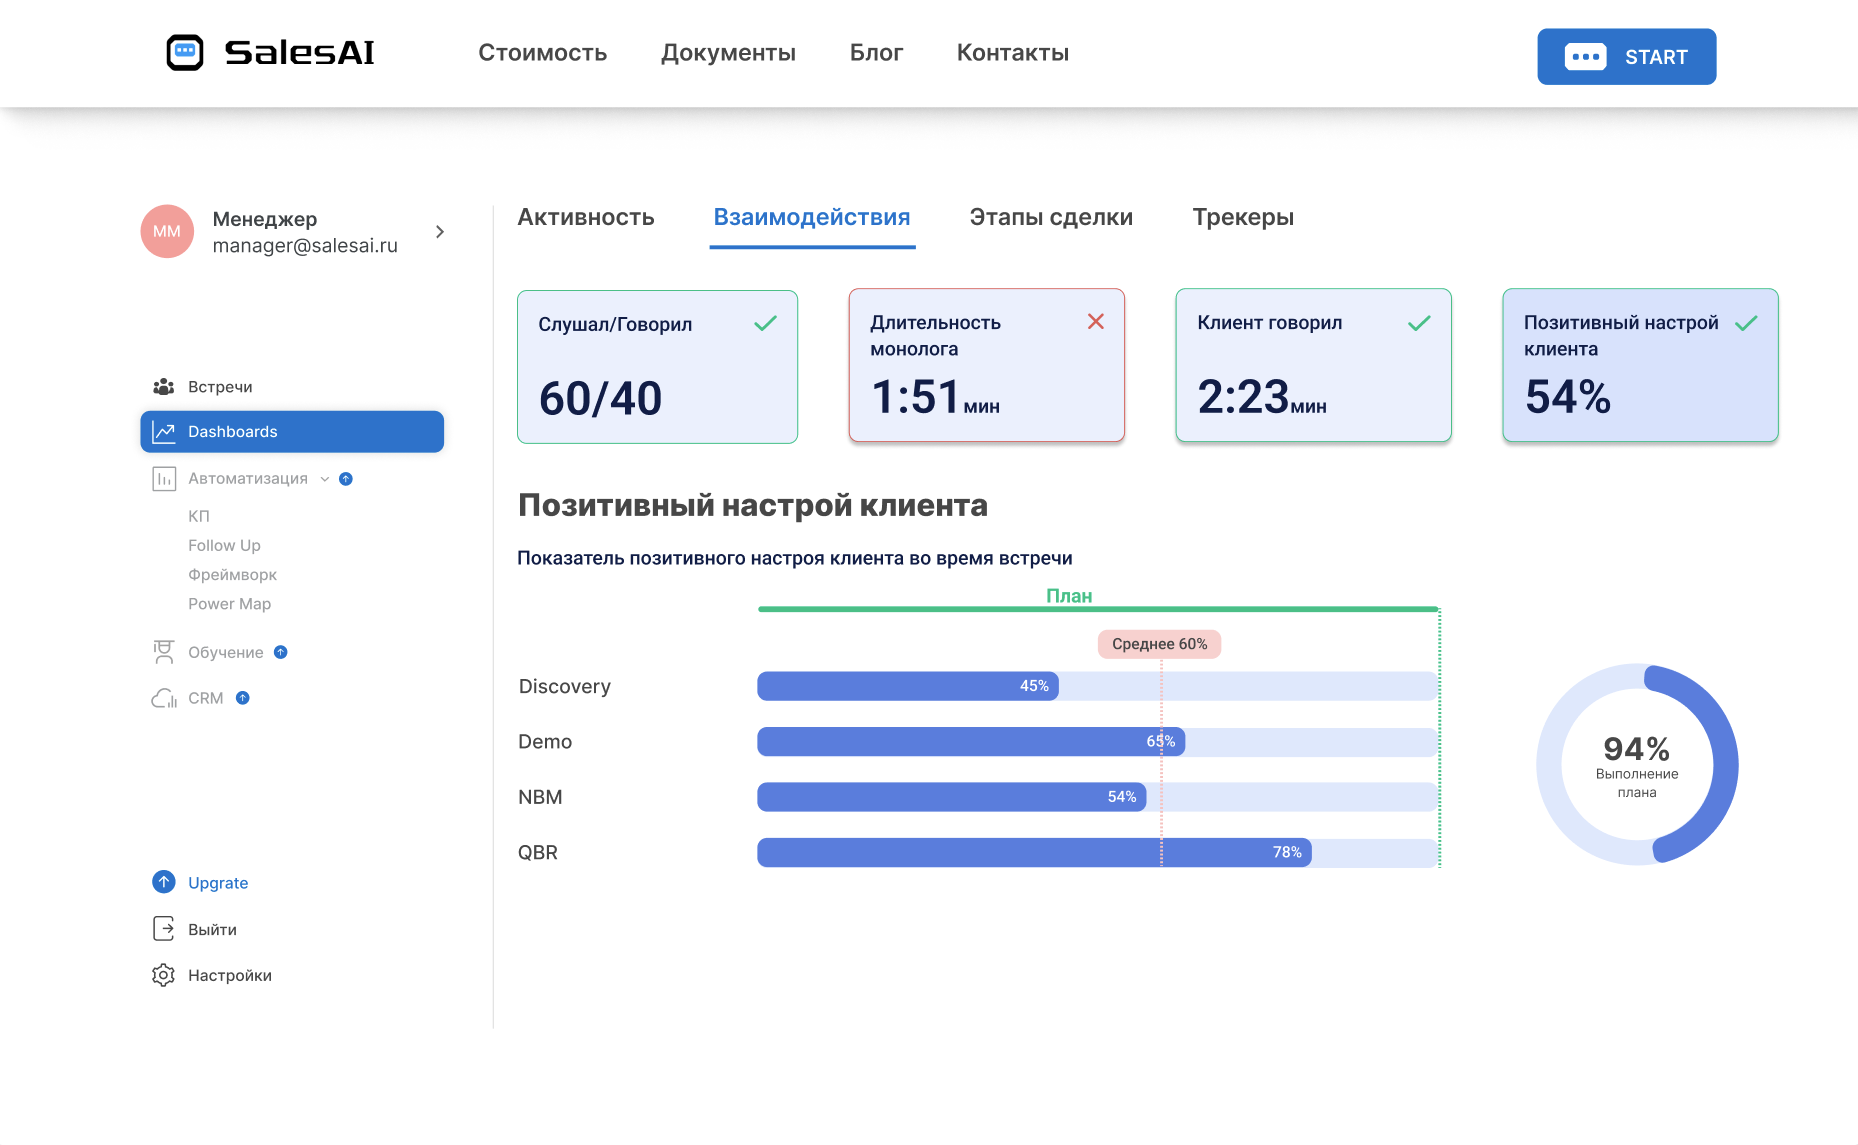 salesai.ru позволяет отследить количественные характеристики любой встречи в процессе.